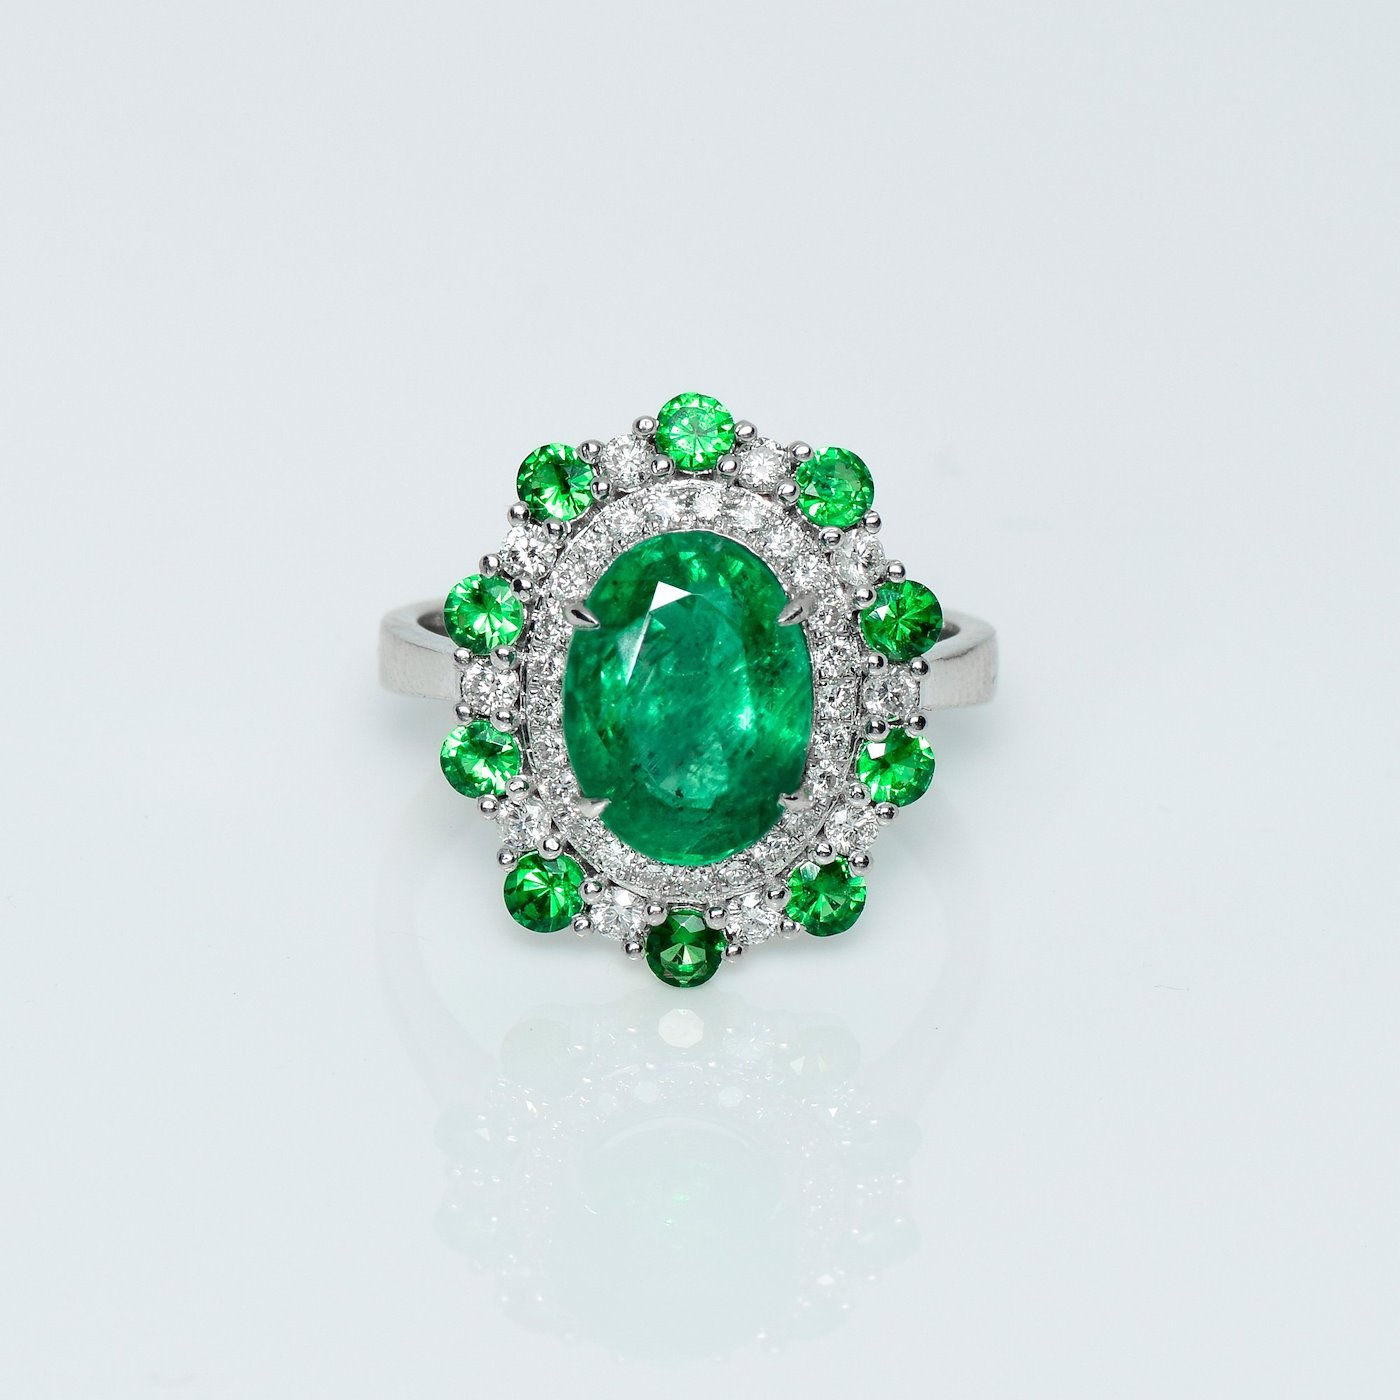 .. - Luxusní prsten s 2,78 ct smaragdem, 0,40 ct diamanty a 0,75 ct tsavority, zlato 585/1000, značeno platnou puncovní značkou "labuť", hrubá hmotnost 4,86 g